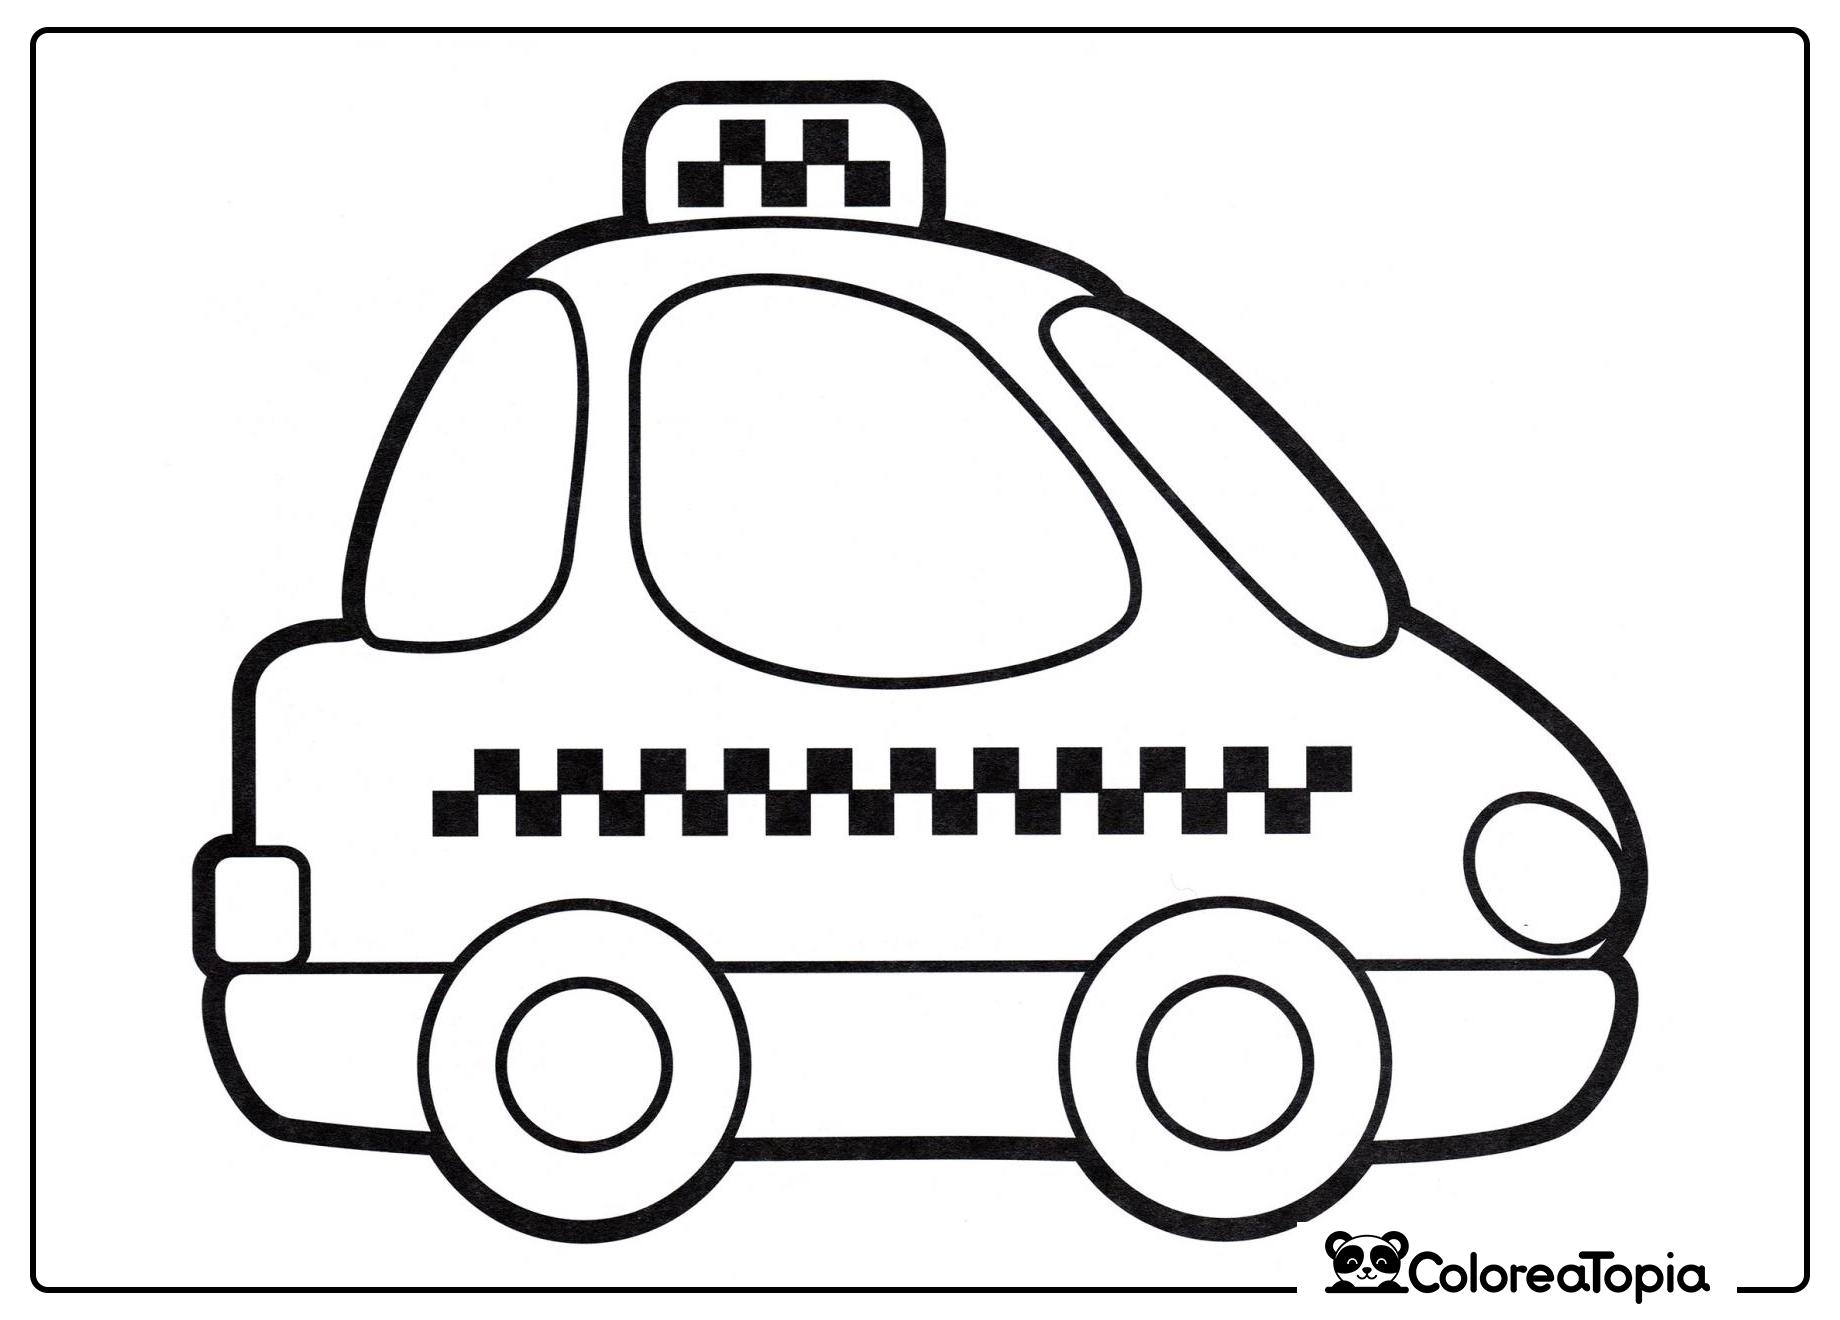 Página para colorear de un taxi - dibujo para colorear